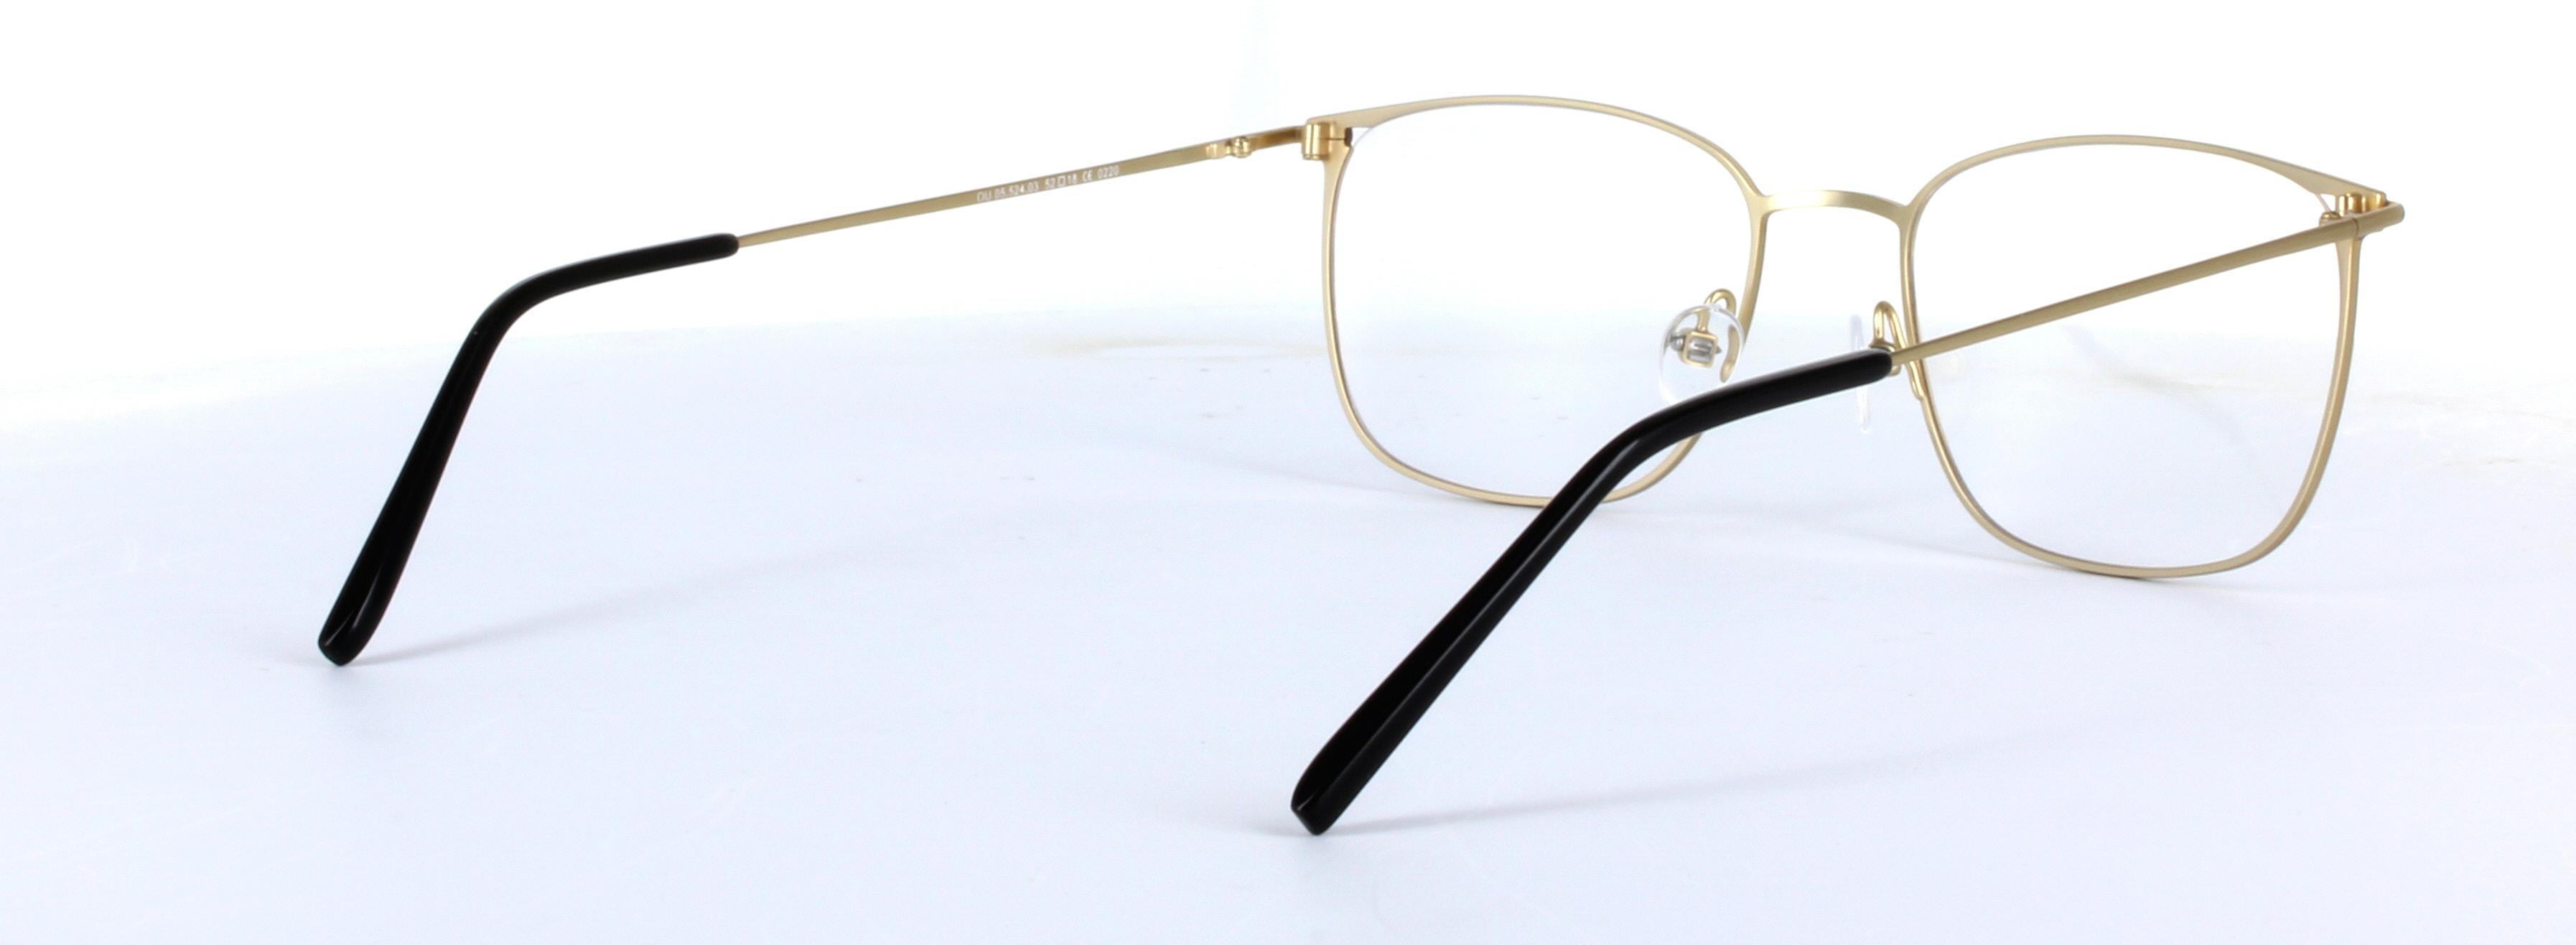 Hayden Brown Full Rim Rectangular Metal Glasses - Image View 4